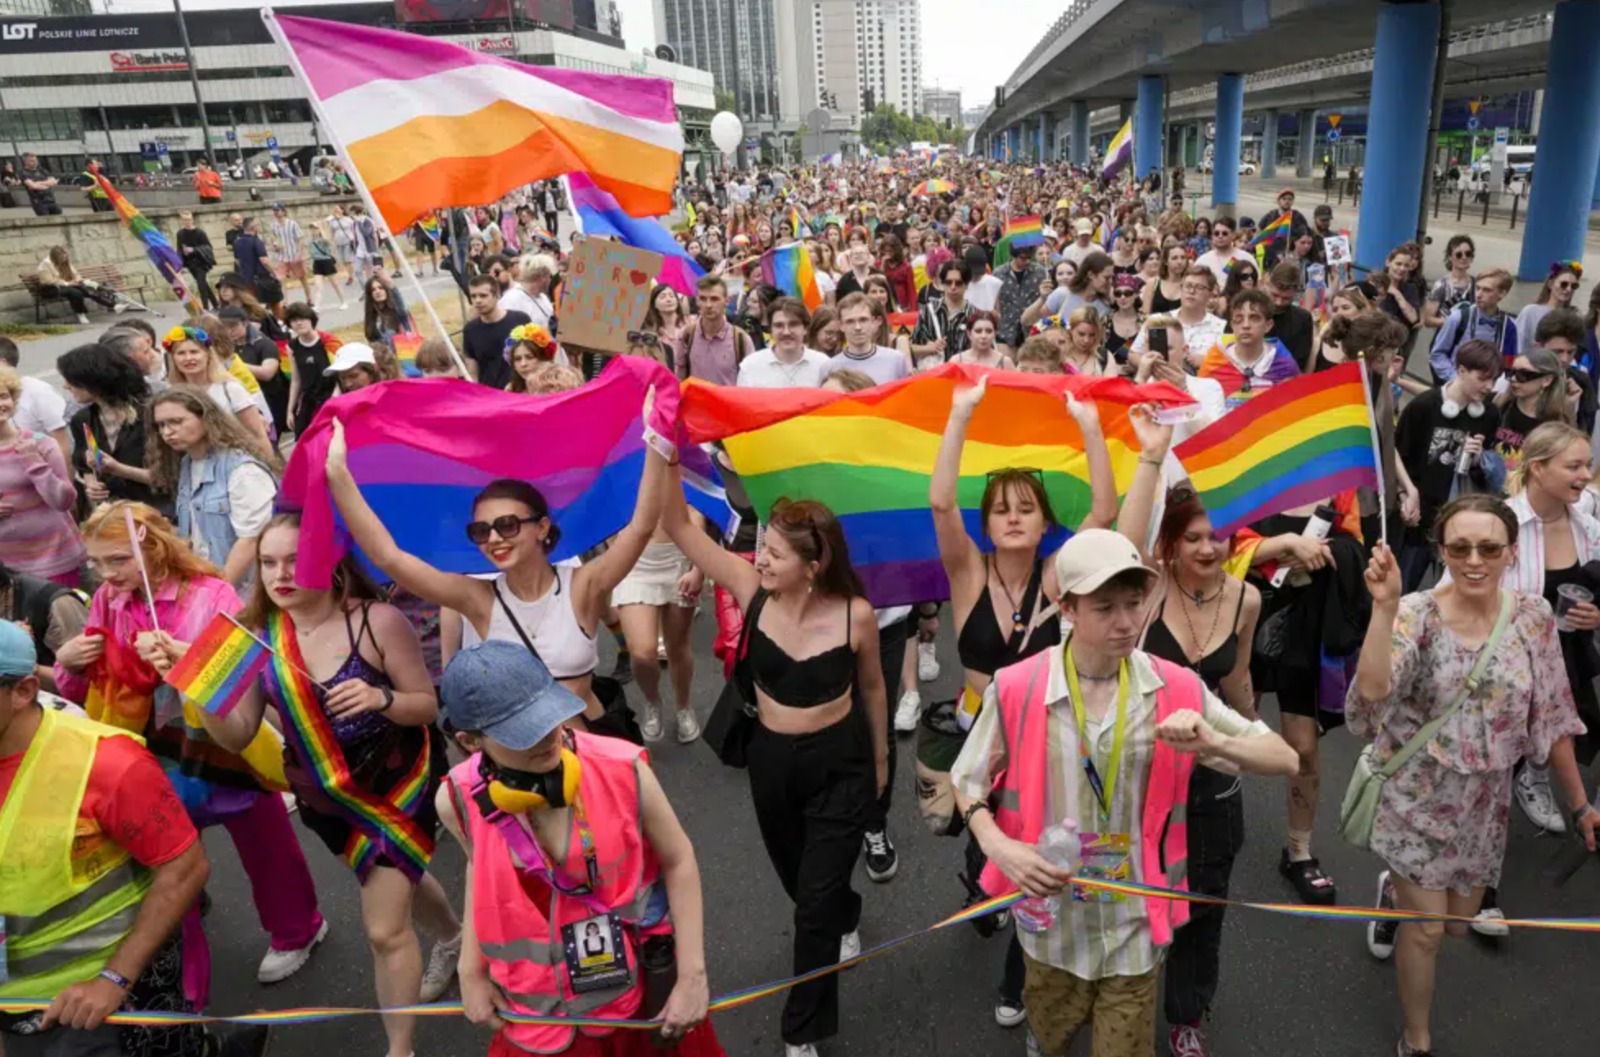 Rodzice walczą o prawa osób transpłciowych dla swoich dzieci i innych osób w konserwatywnej Polsce